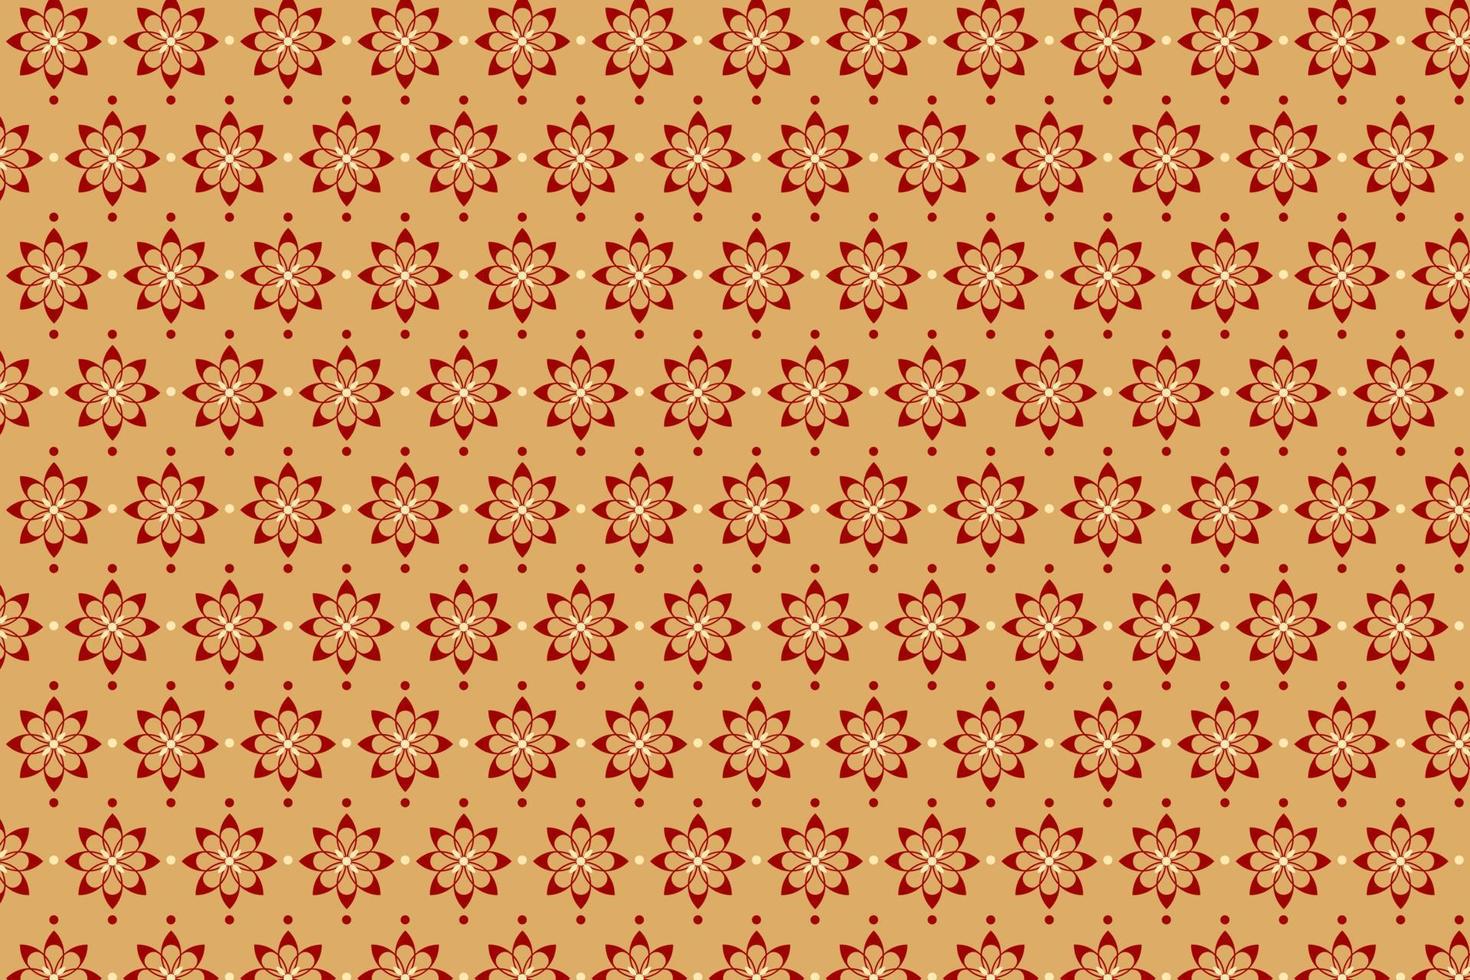 patrón vectorial de flor de cerezo, patrón tradicional, textura tradicional, fondo rojo y dorado. vector